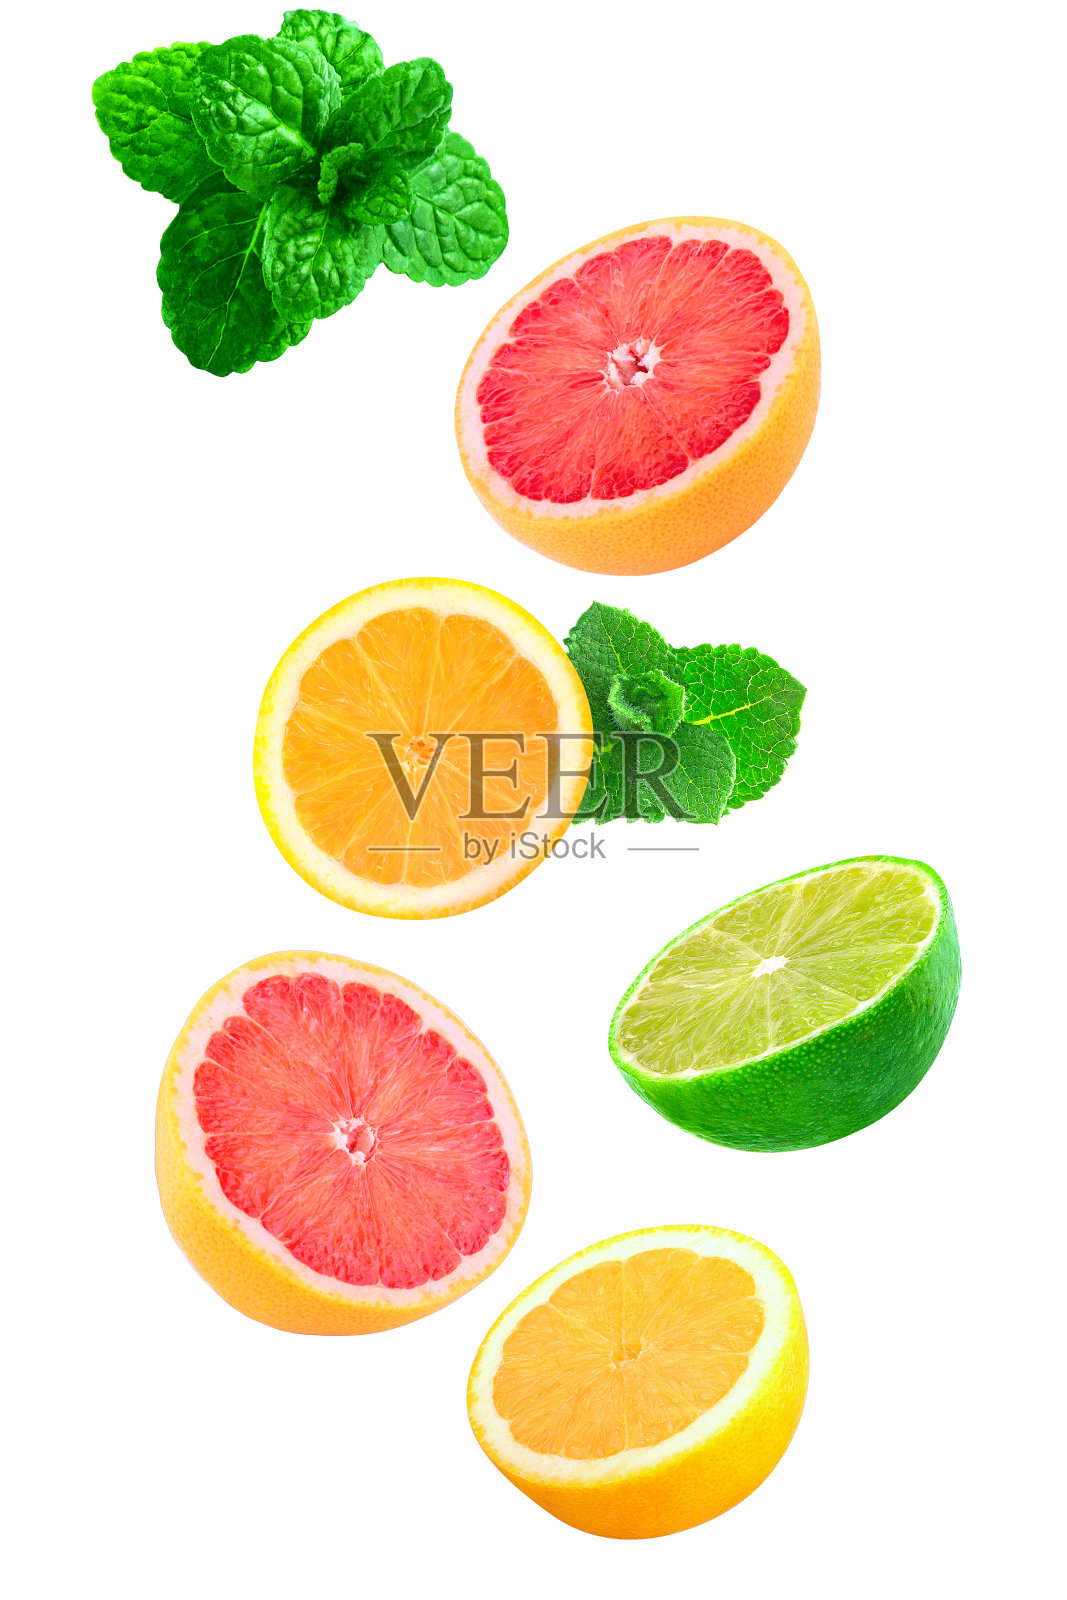 落片薄荷、柠檬、葡萄柚照片摄影图片